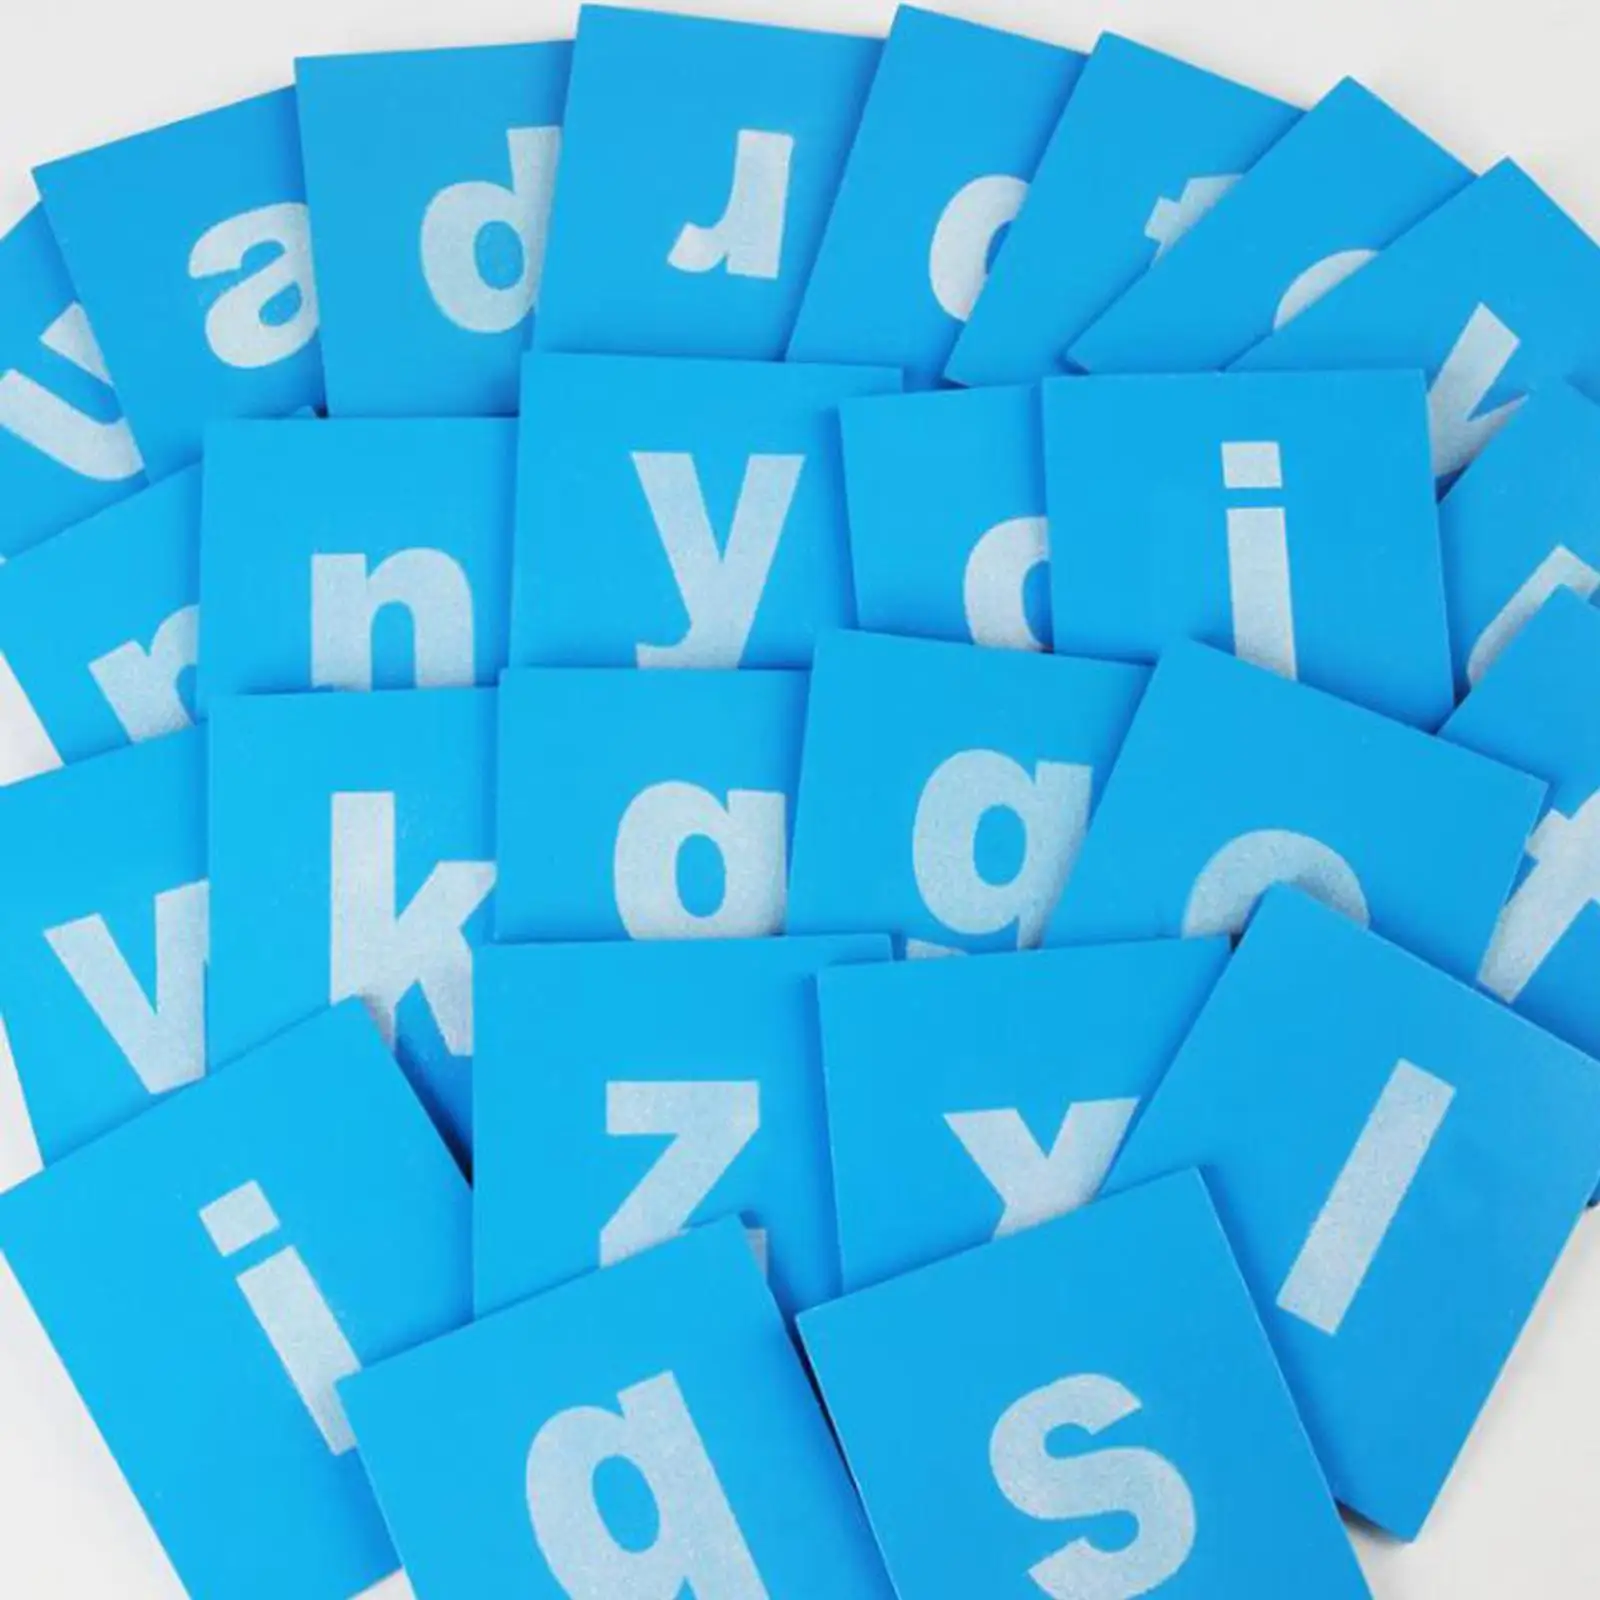 

Наждачная бумага Монтессори, обучающая игрушка, алфавит Монтессори, материал для дошкольного обучения для детей